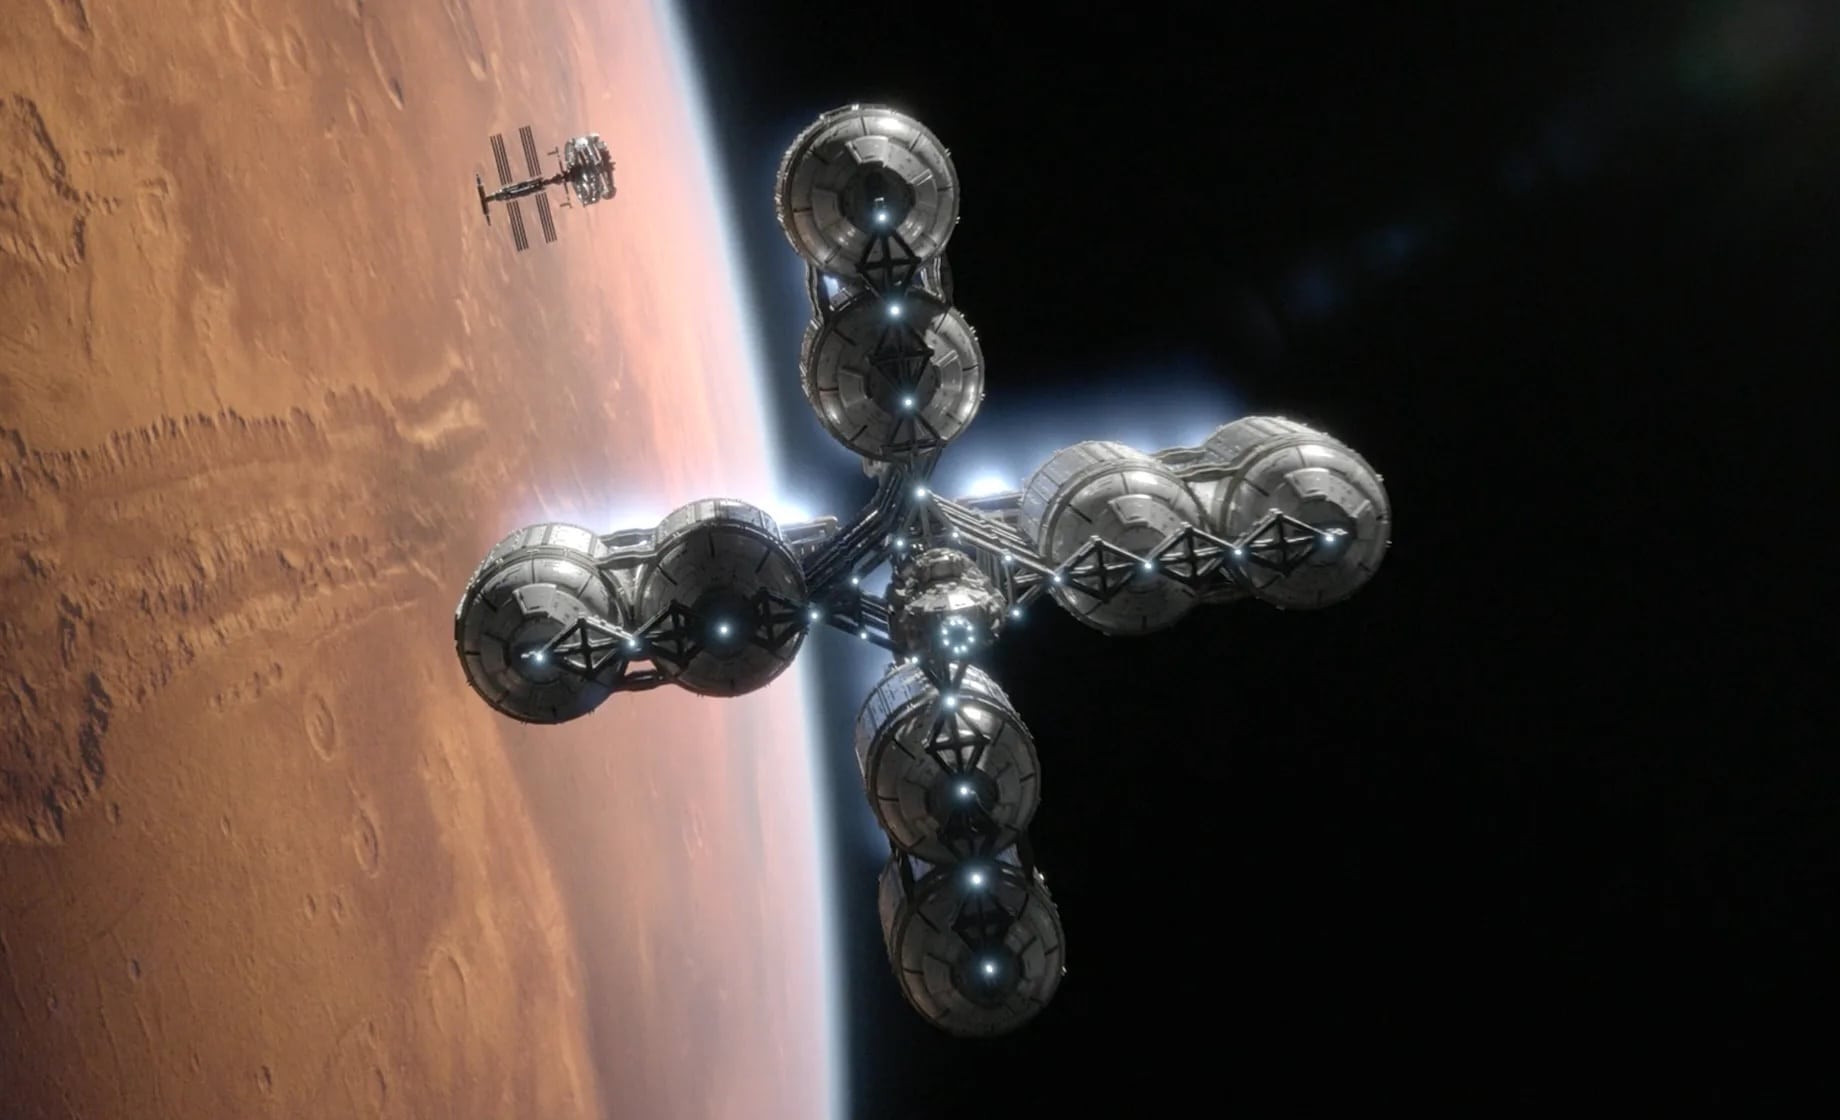 For All Mankind season 4 episode 8 Ranger in Mars orbit